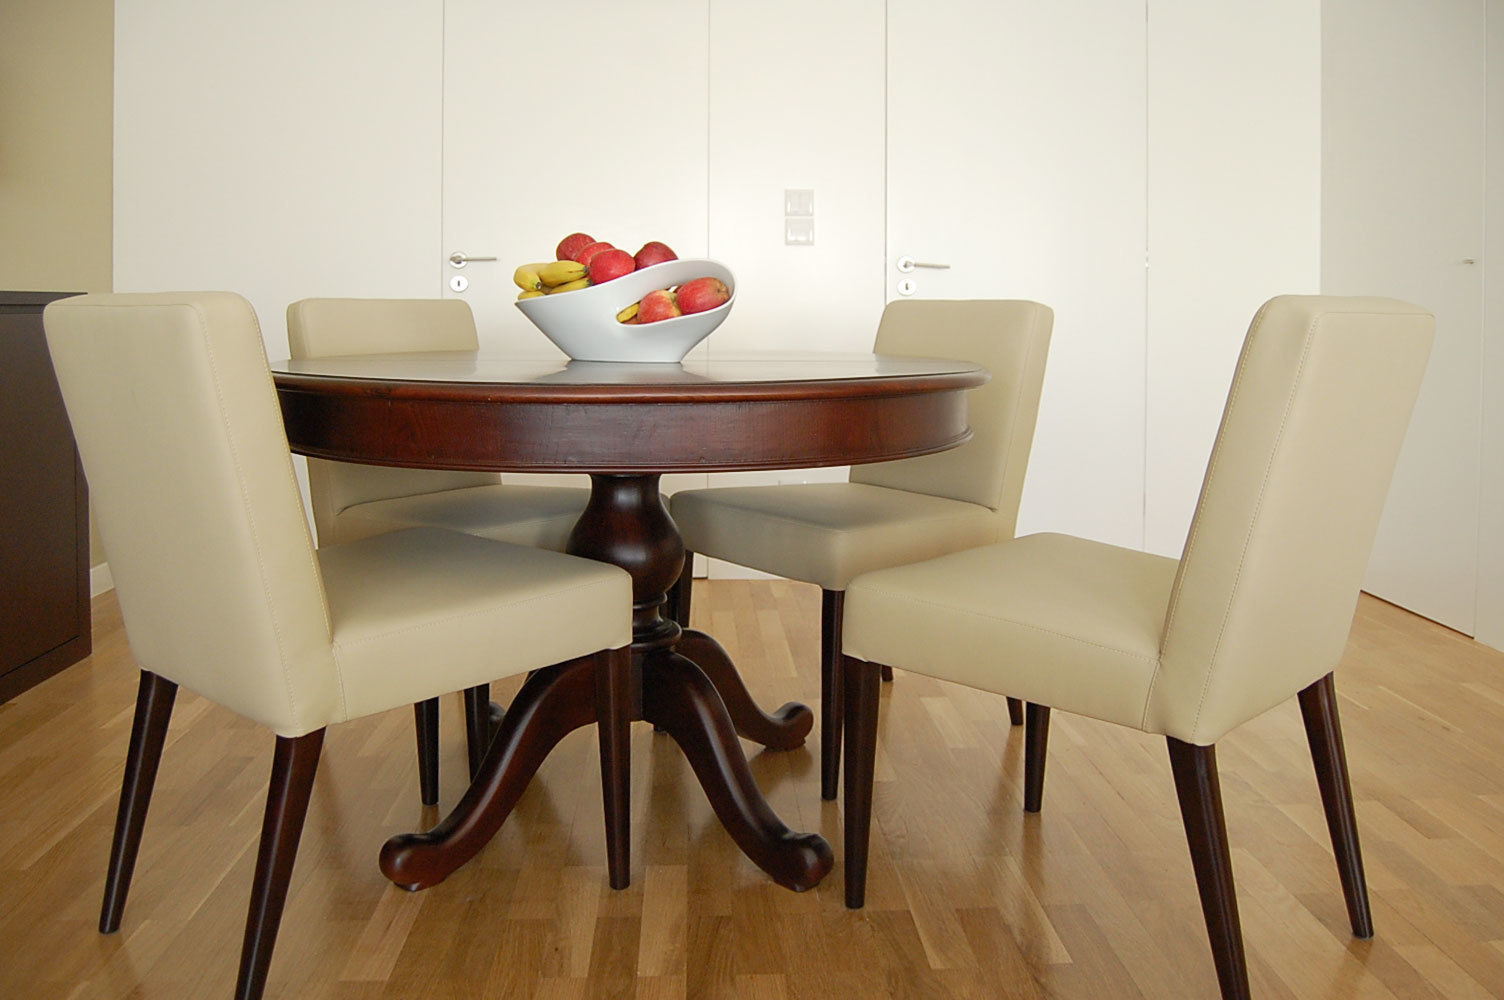 Projectos de Decoração de Interiores, MOYO - Decoração de Interiores MOYO - Decoração de Interiores Dining room Engineered Wood Transparent Tables